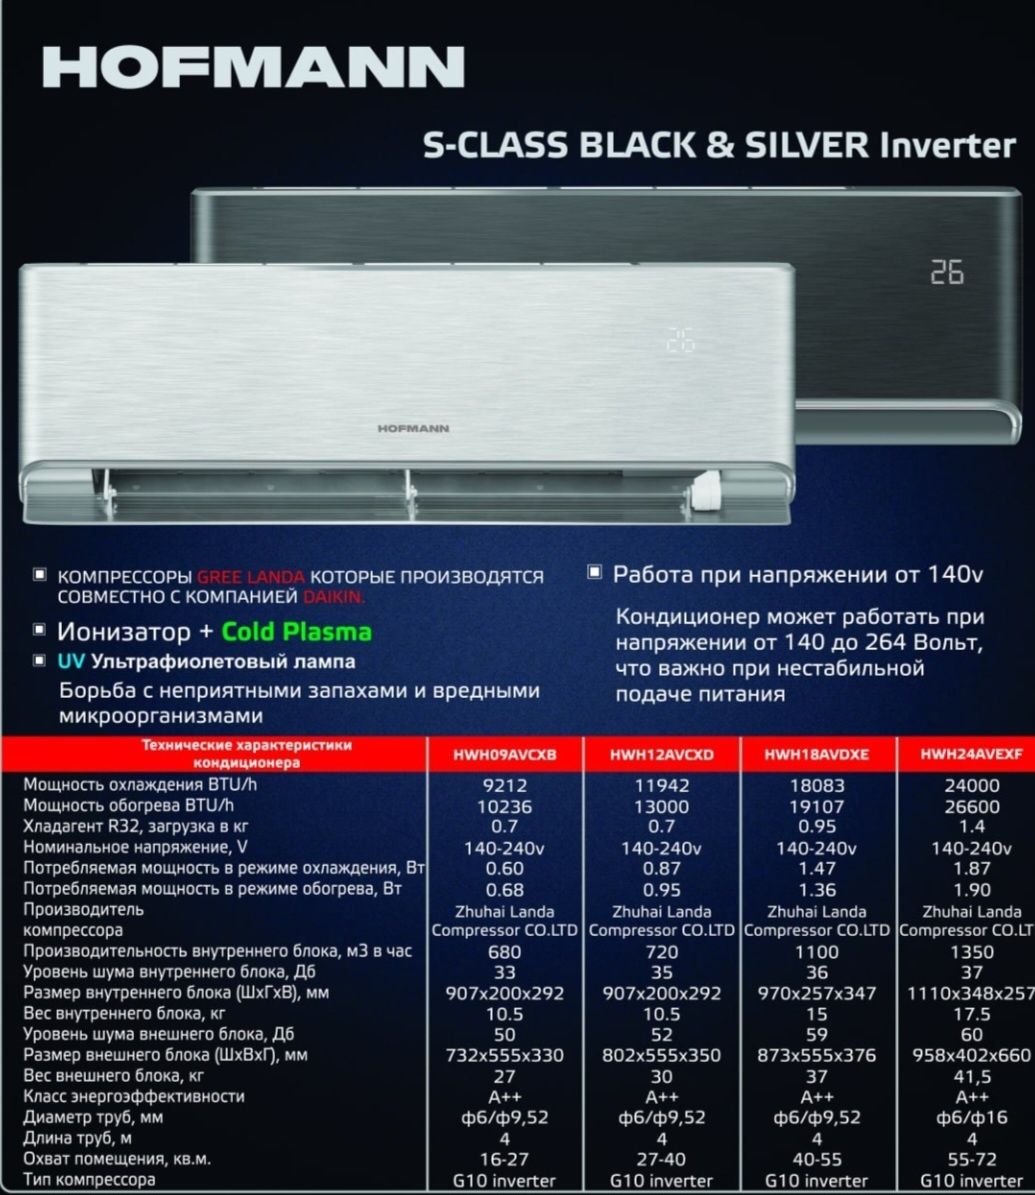 NEW!!! Hofmann S-Class BLACK & SILVER inverter